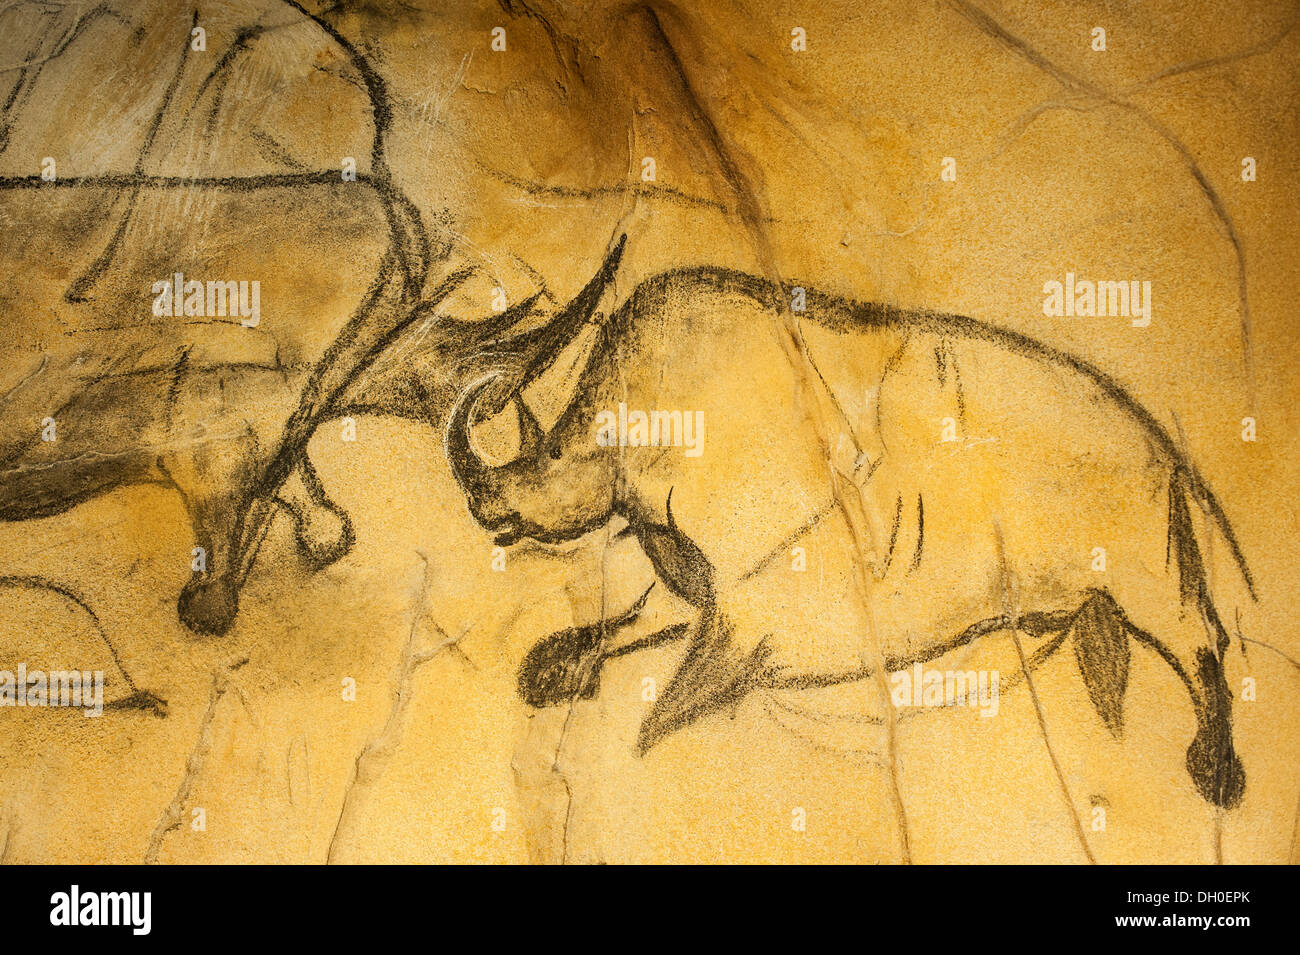 Réplique de la peinture rupestre préhistorique de rhinocéros laineux, grotte Chauvet, Grotte Chauvet-Pont-d'Arc en Ardèche, France Banque D'Images